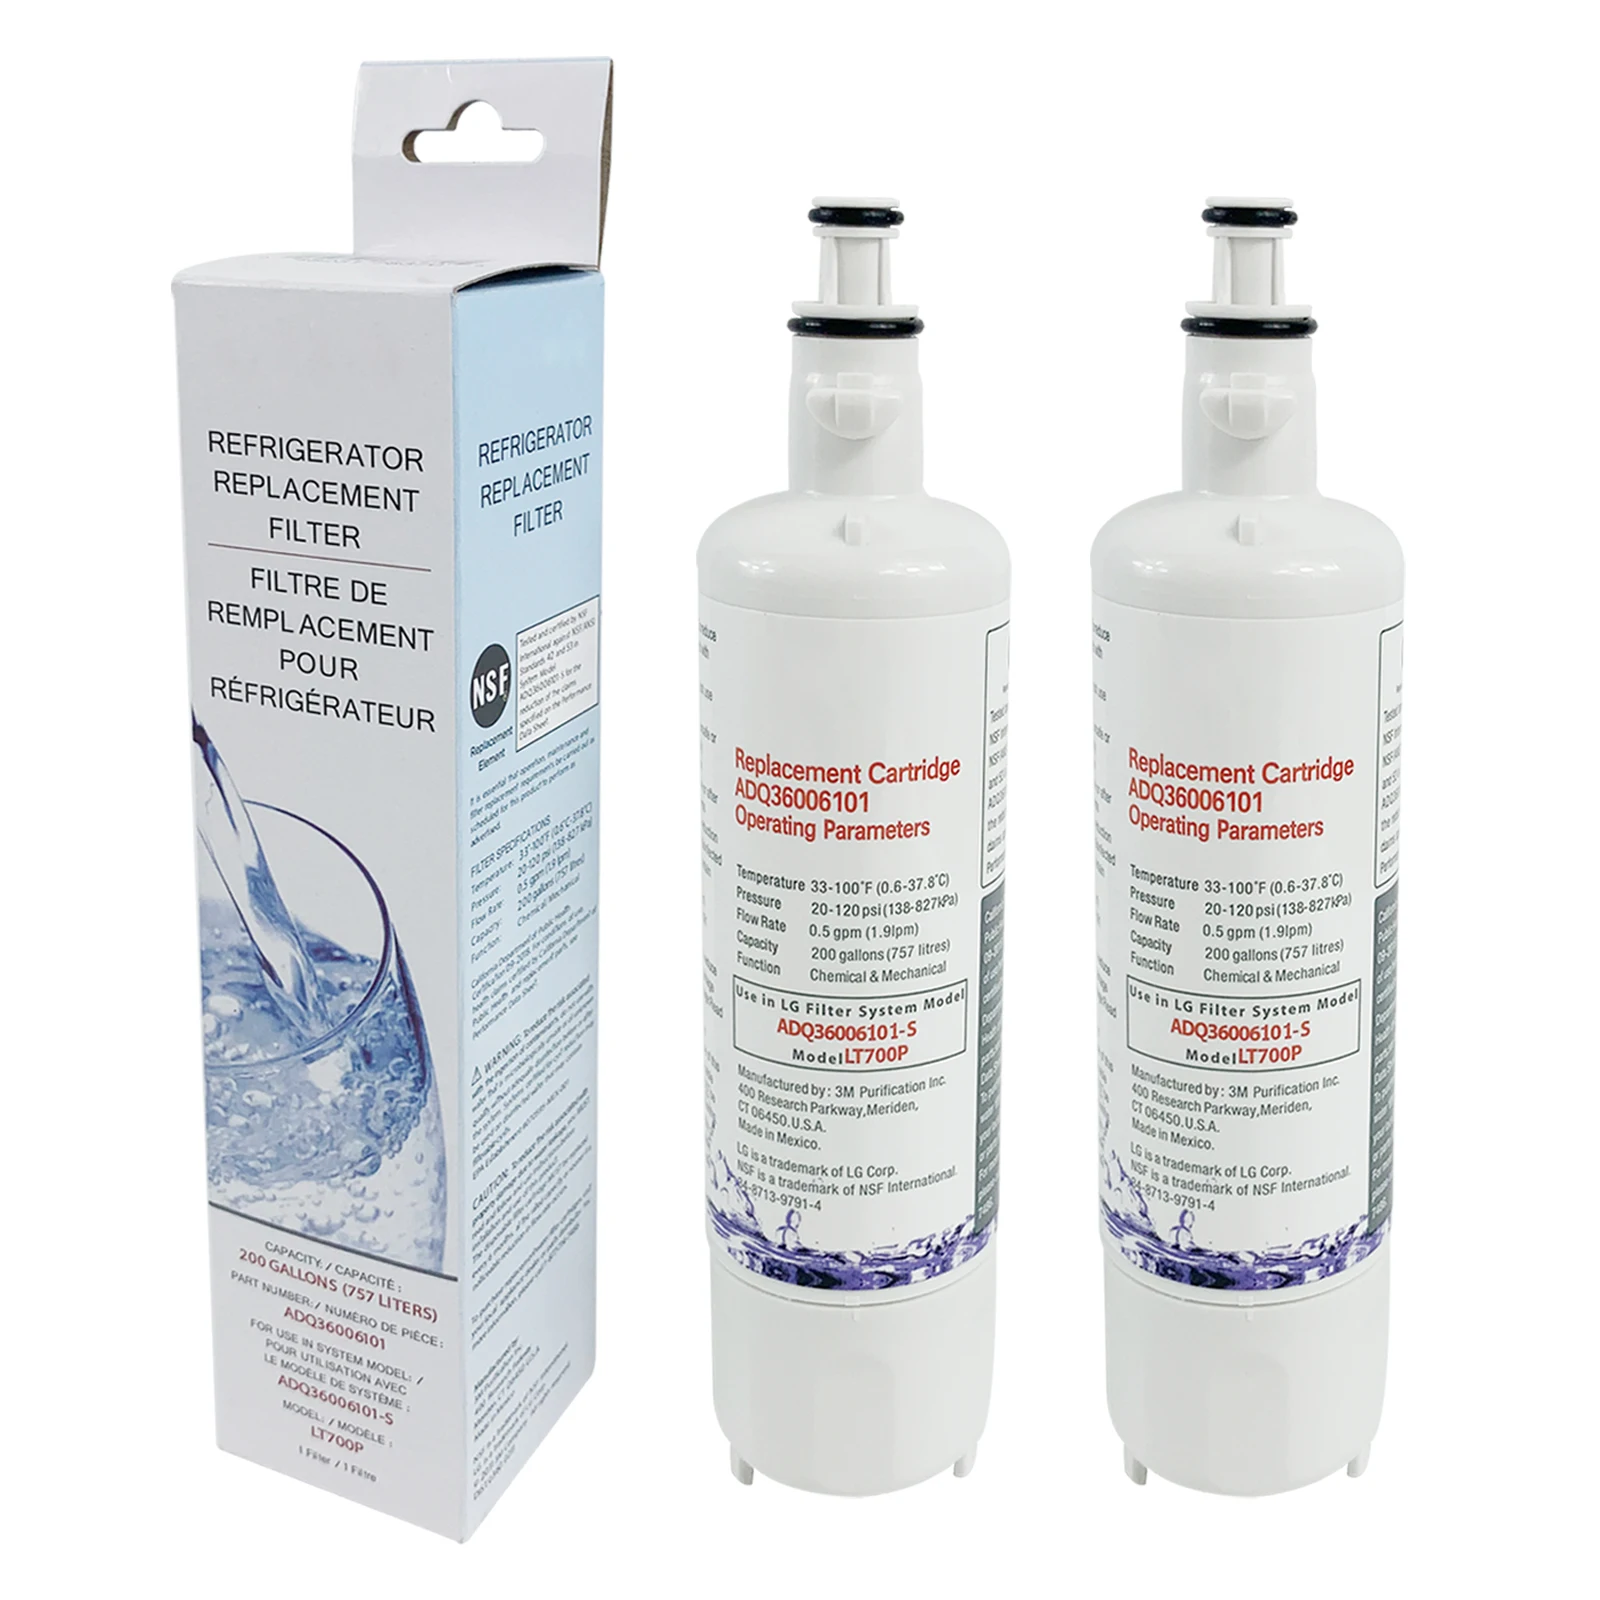 2 упаковки фильтра для воды в холодильнике замена картриджа для LG LT700P, ADQ36006101, ADQ36006102, Kenmore 46-9690, 469690